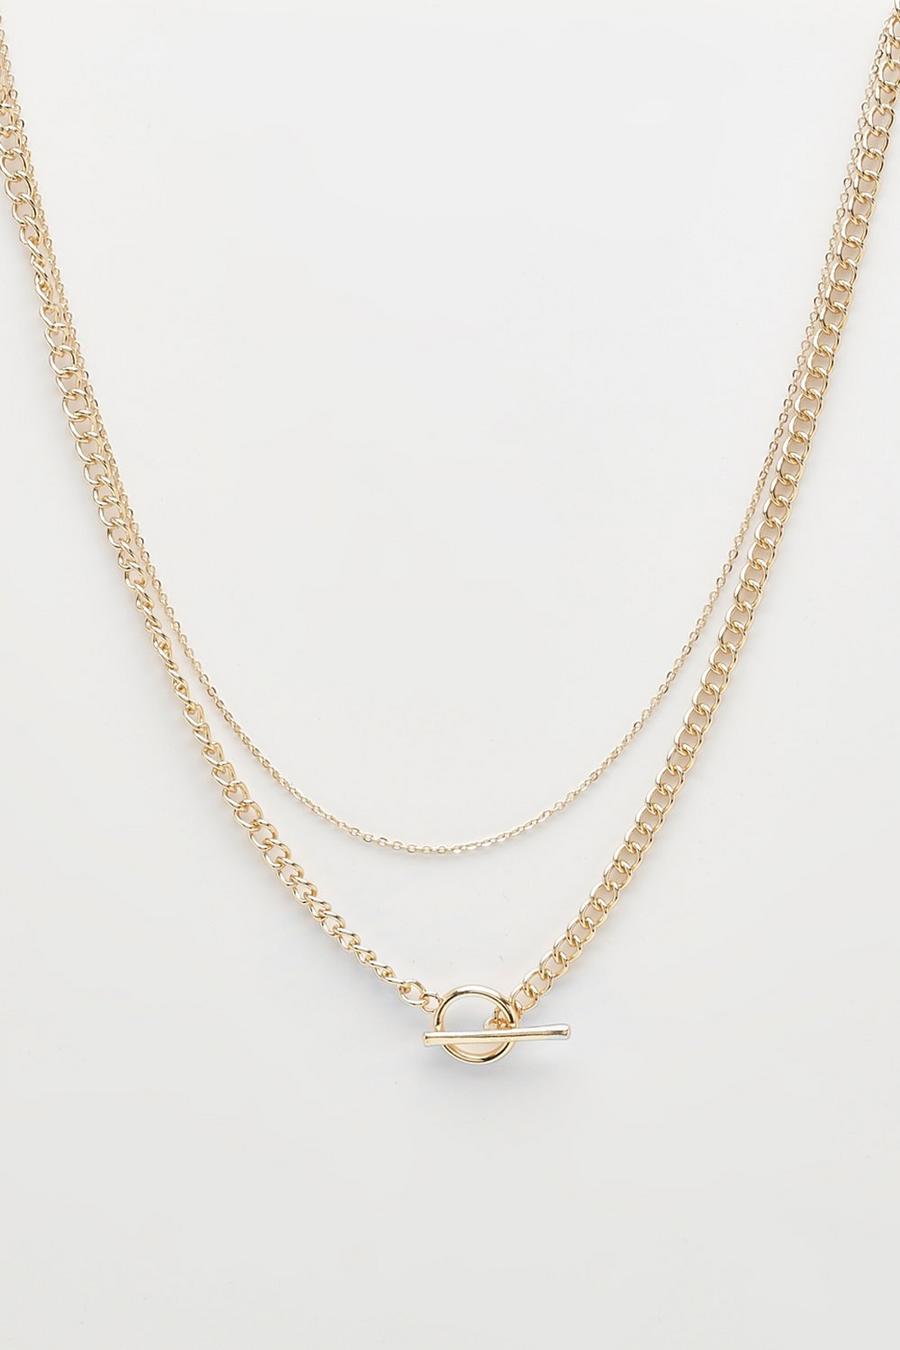 Gold metallic Guldigt halsband med kedjelänkar